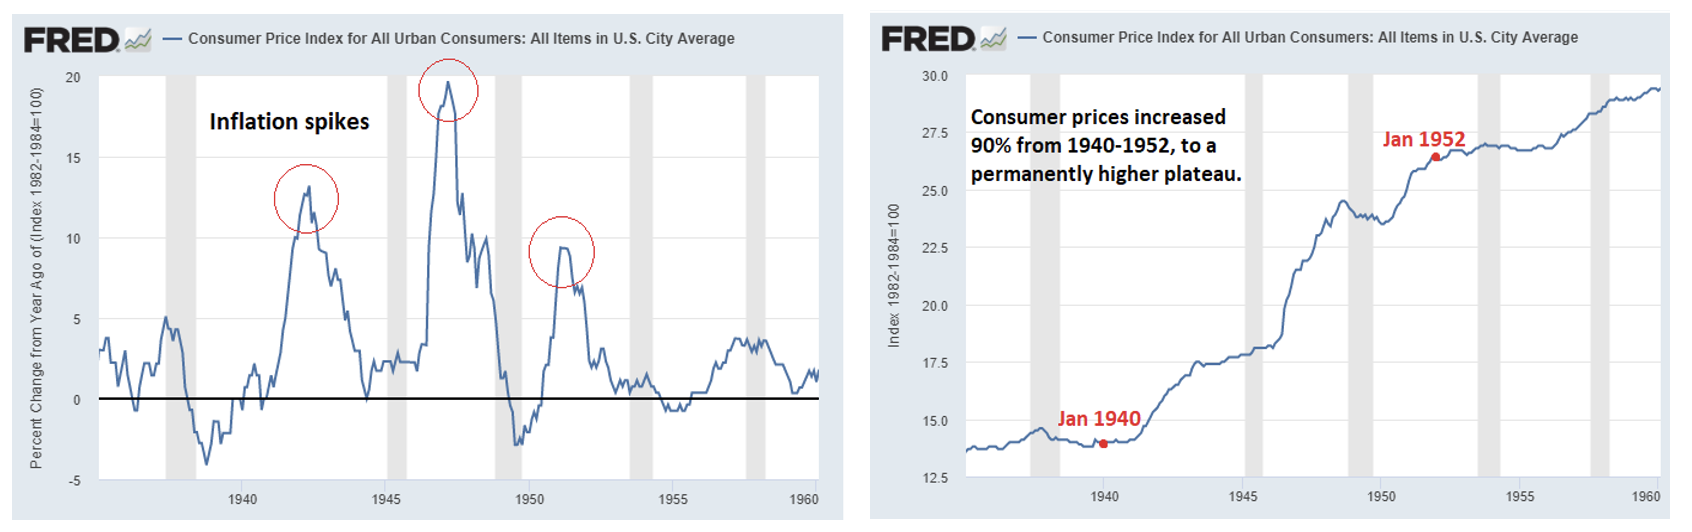 Figura 2 - Consumer Price Index for All Urban Consumers